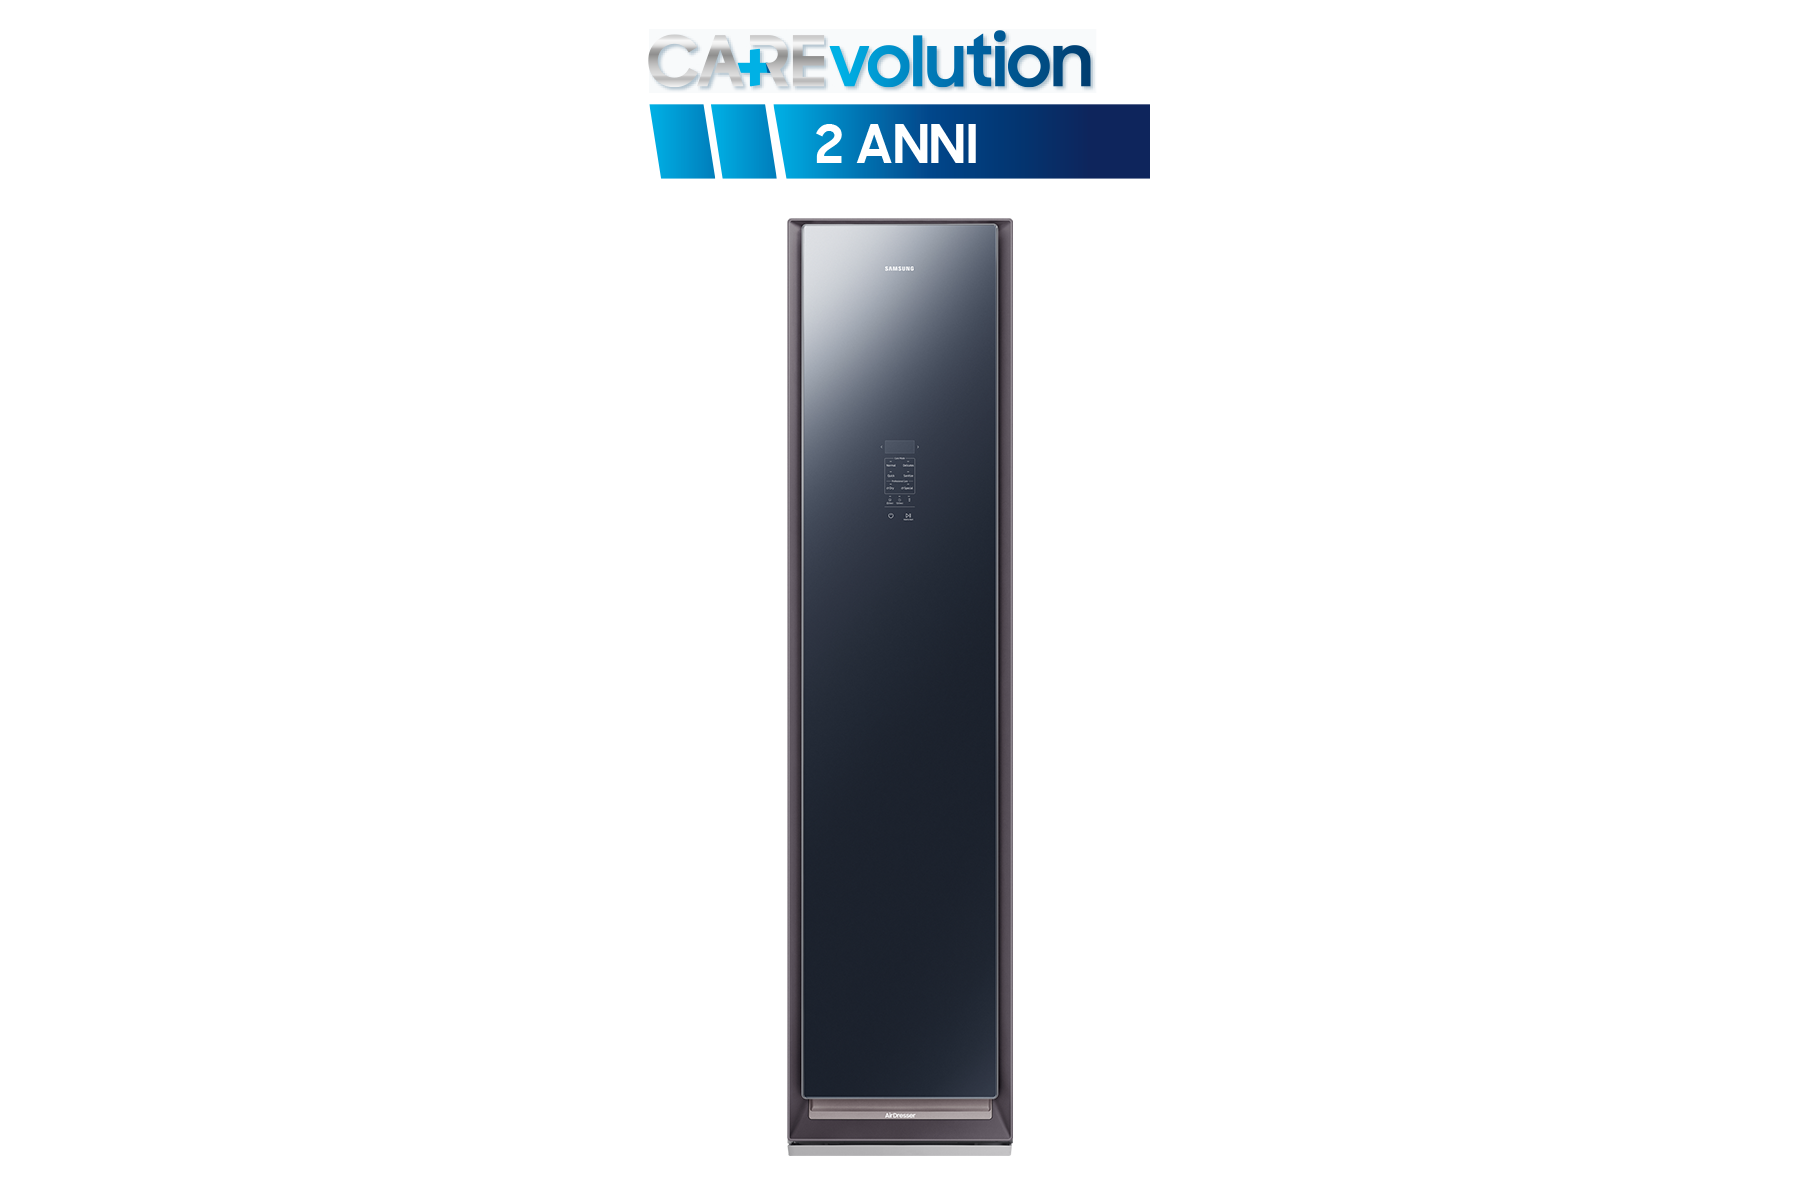 Samsung CAREvolution 2 anni estensione di garanzia (Airdresser), White